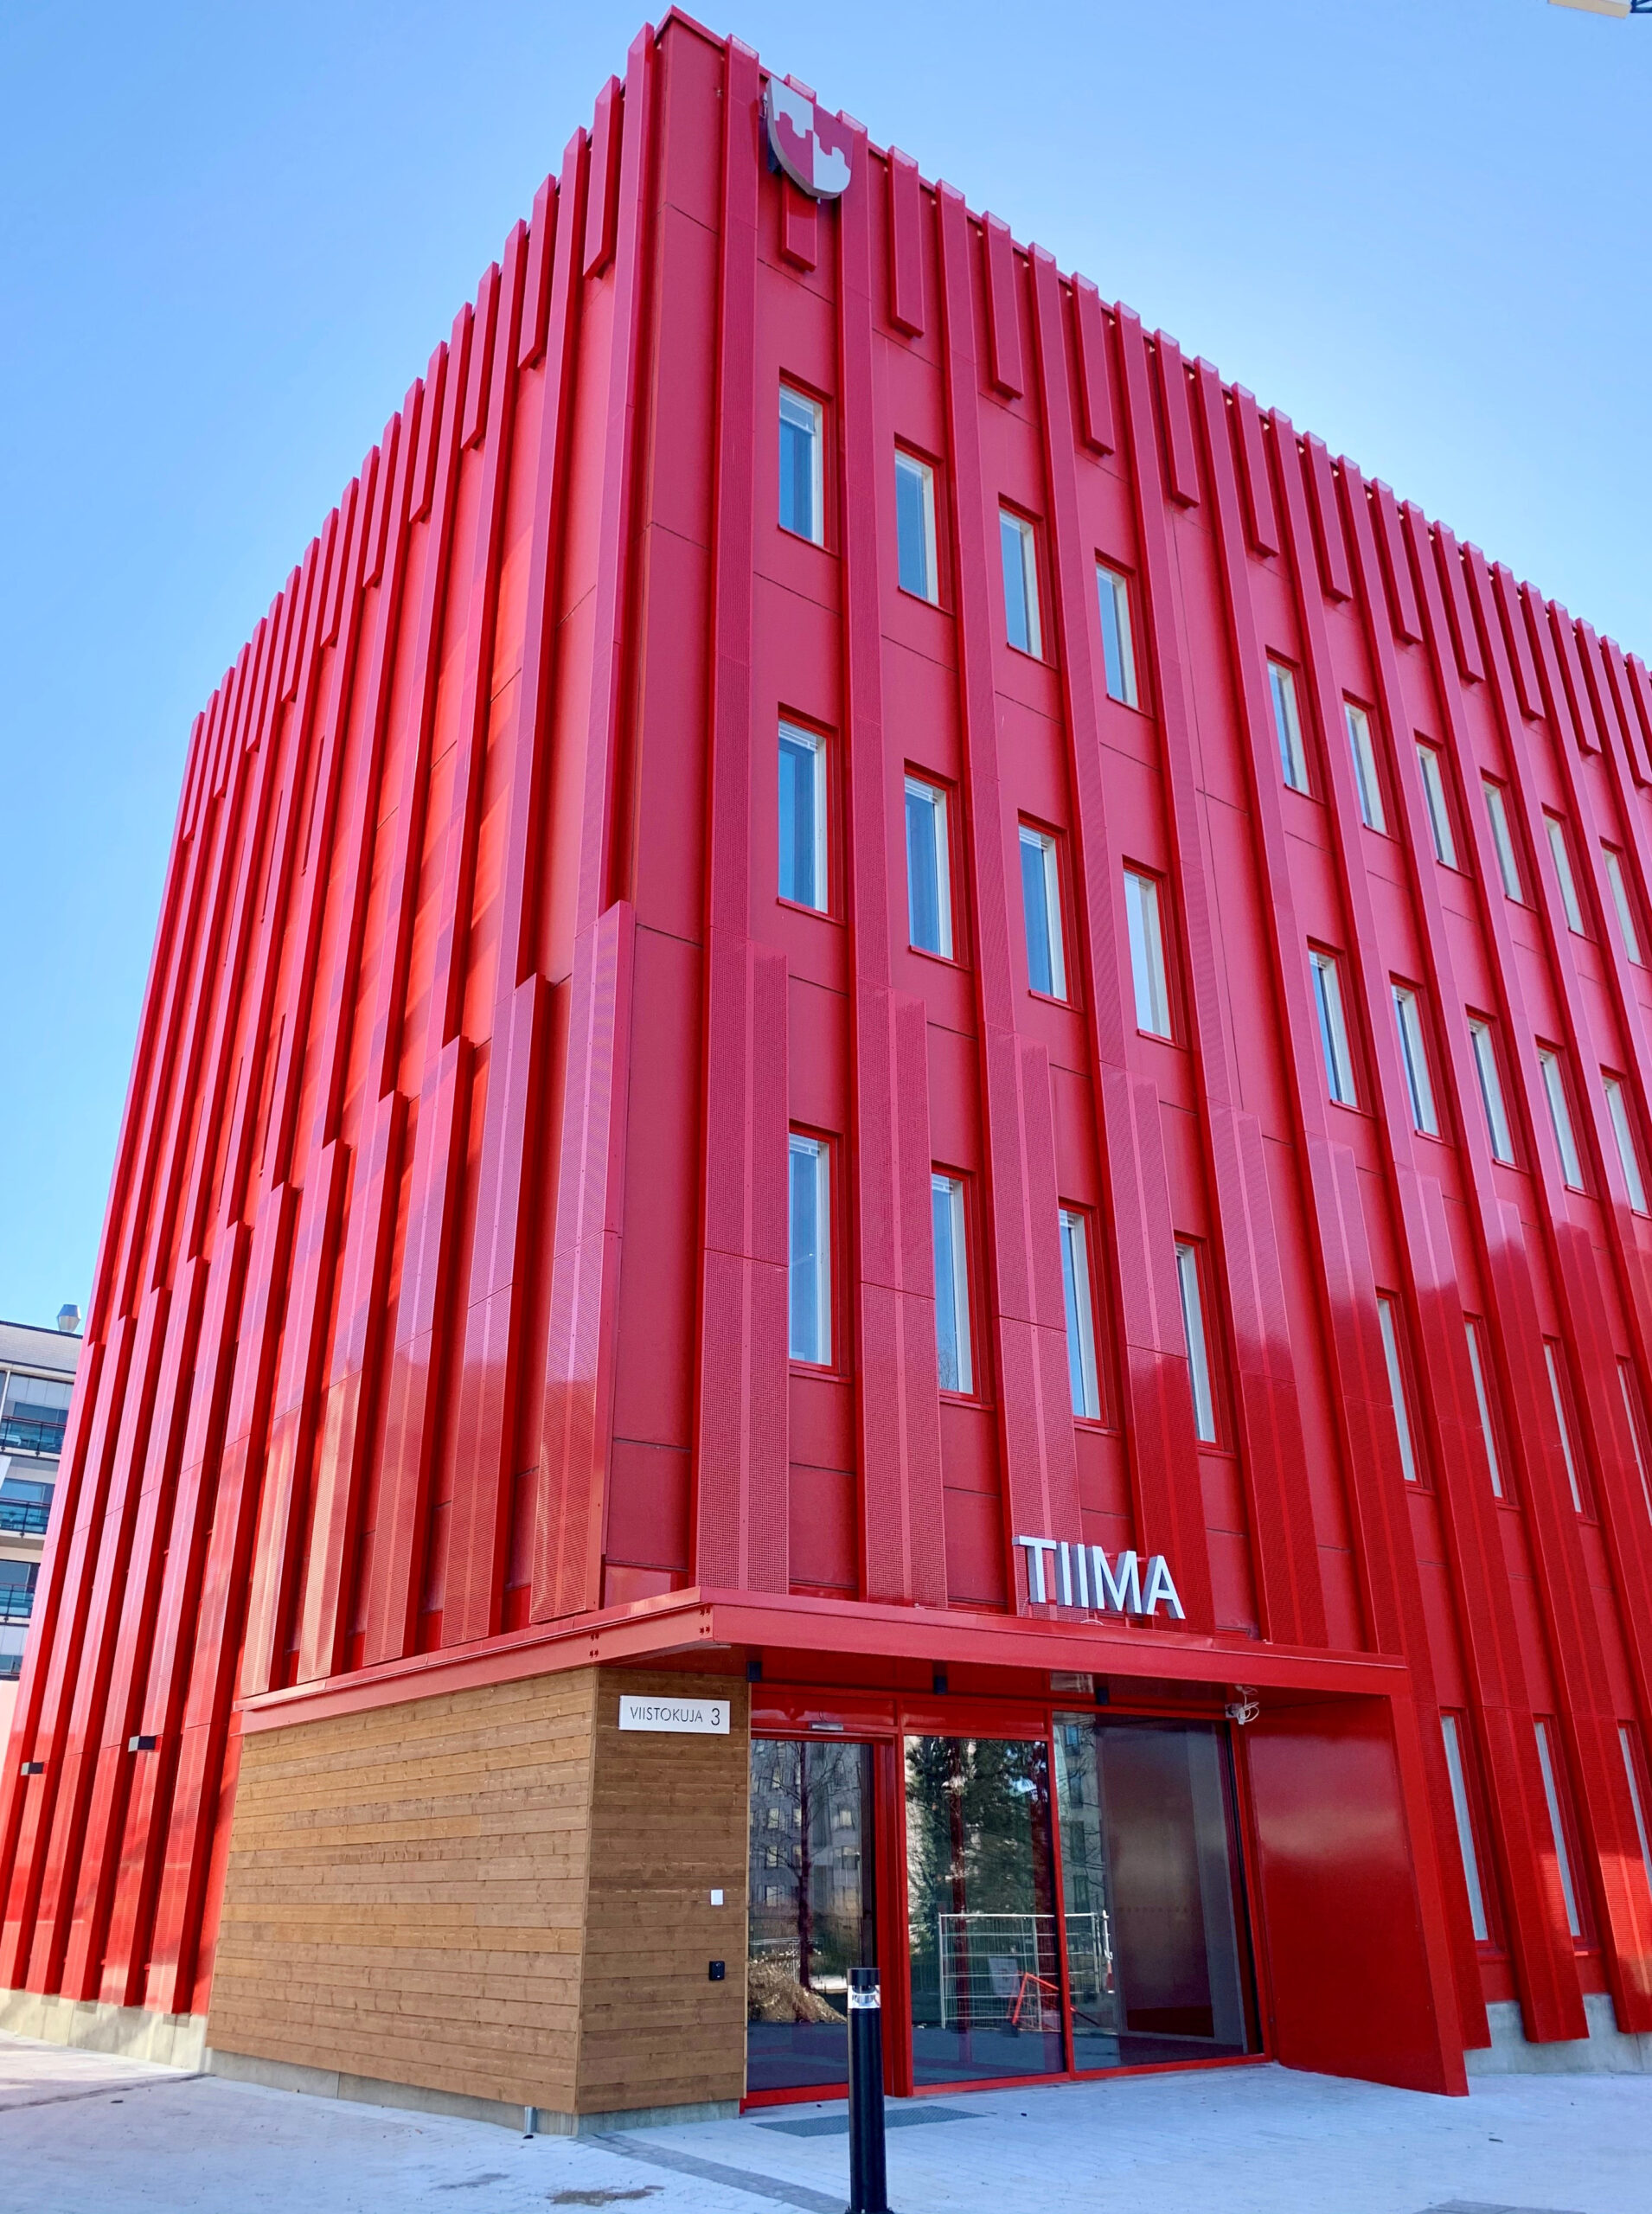 Uusi punainen nelikerroksinen toimitilarakennus, jonka yläosassa on kunnan vaakuna ja oven yläpuolella lukee valkoisin kirjaimin talon nimi Tiima.